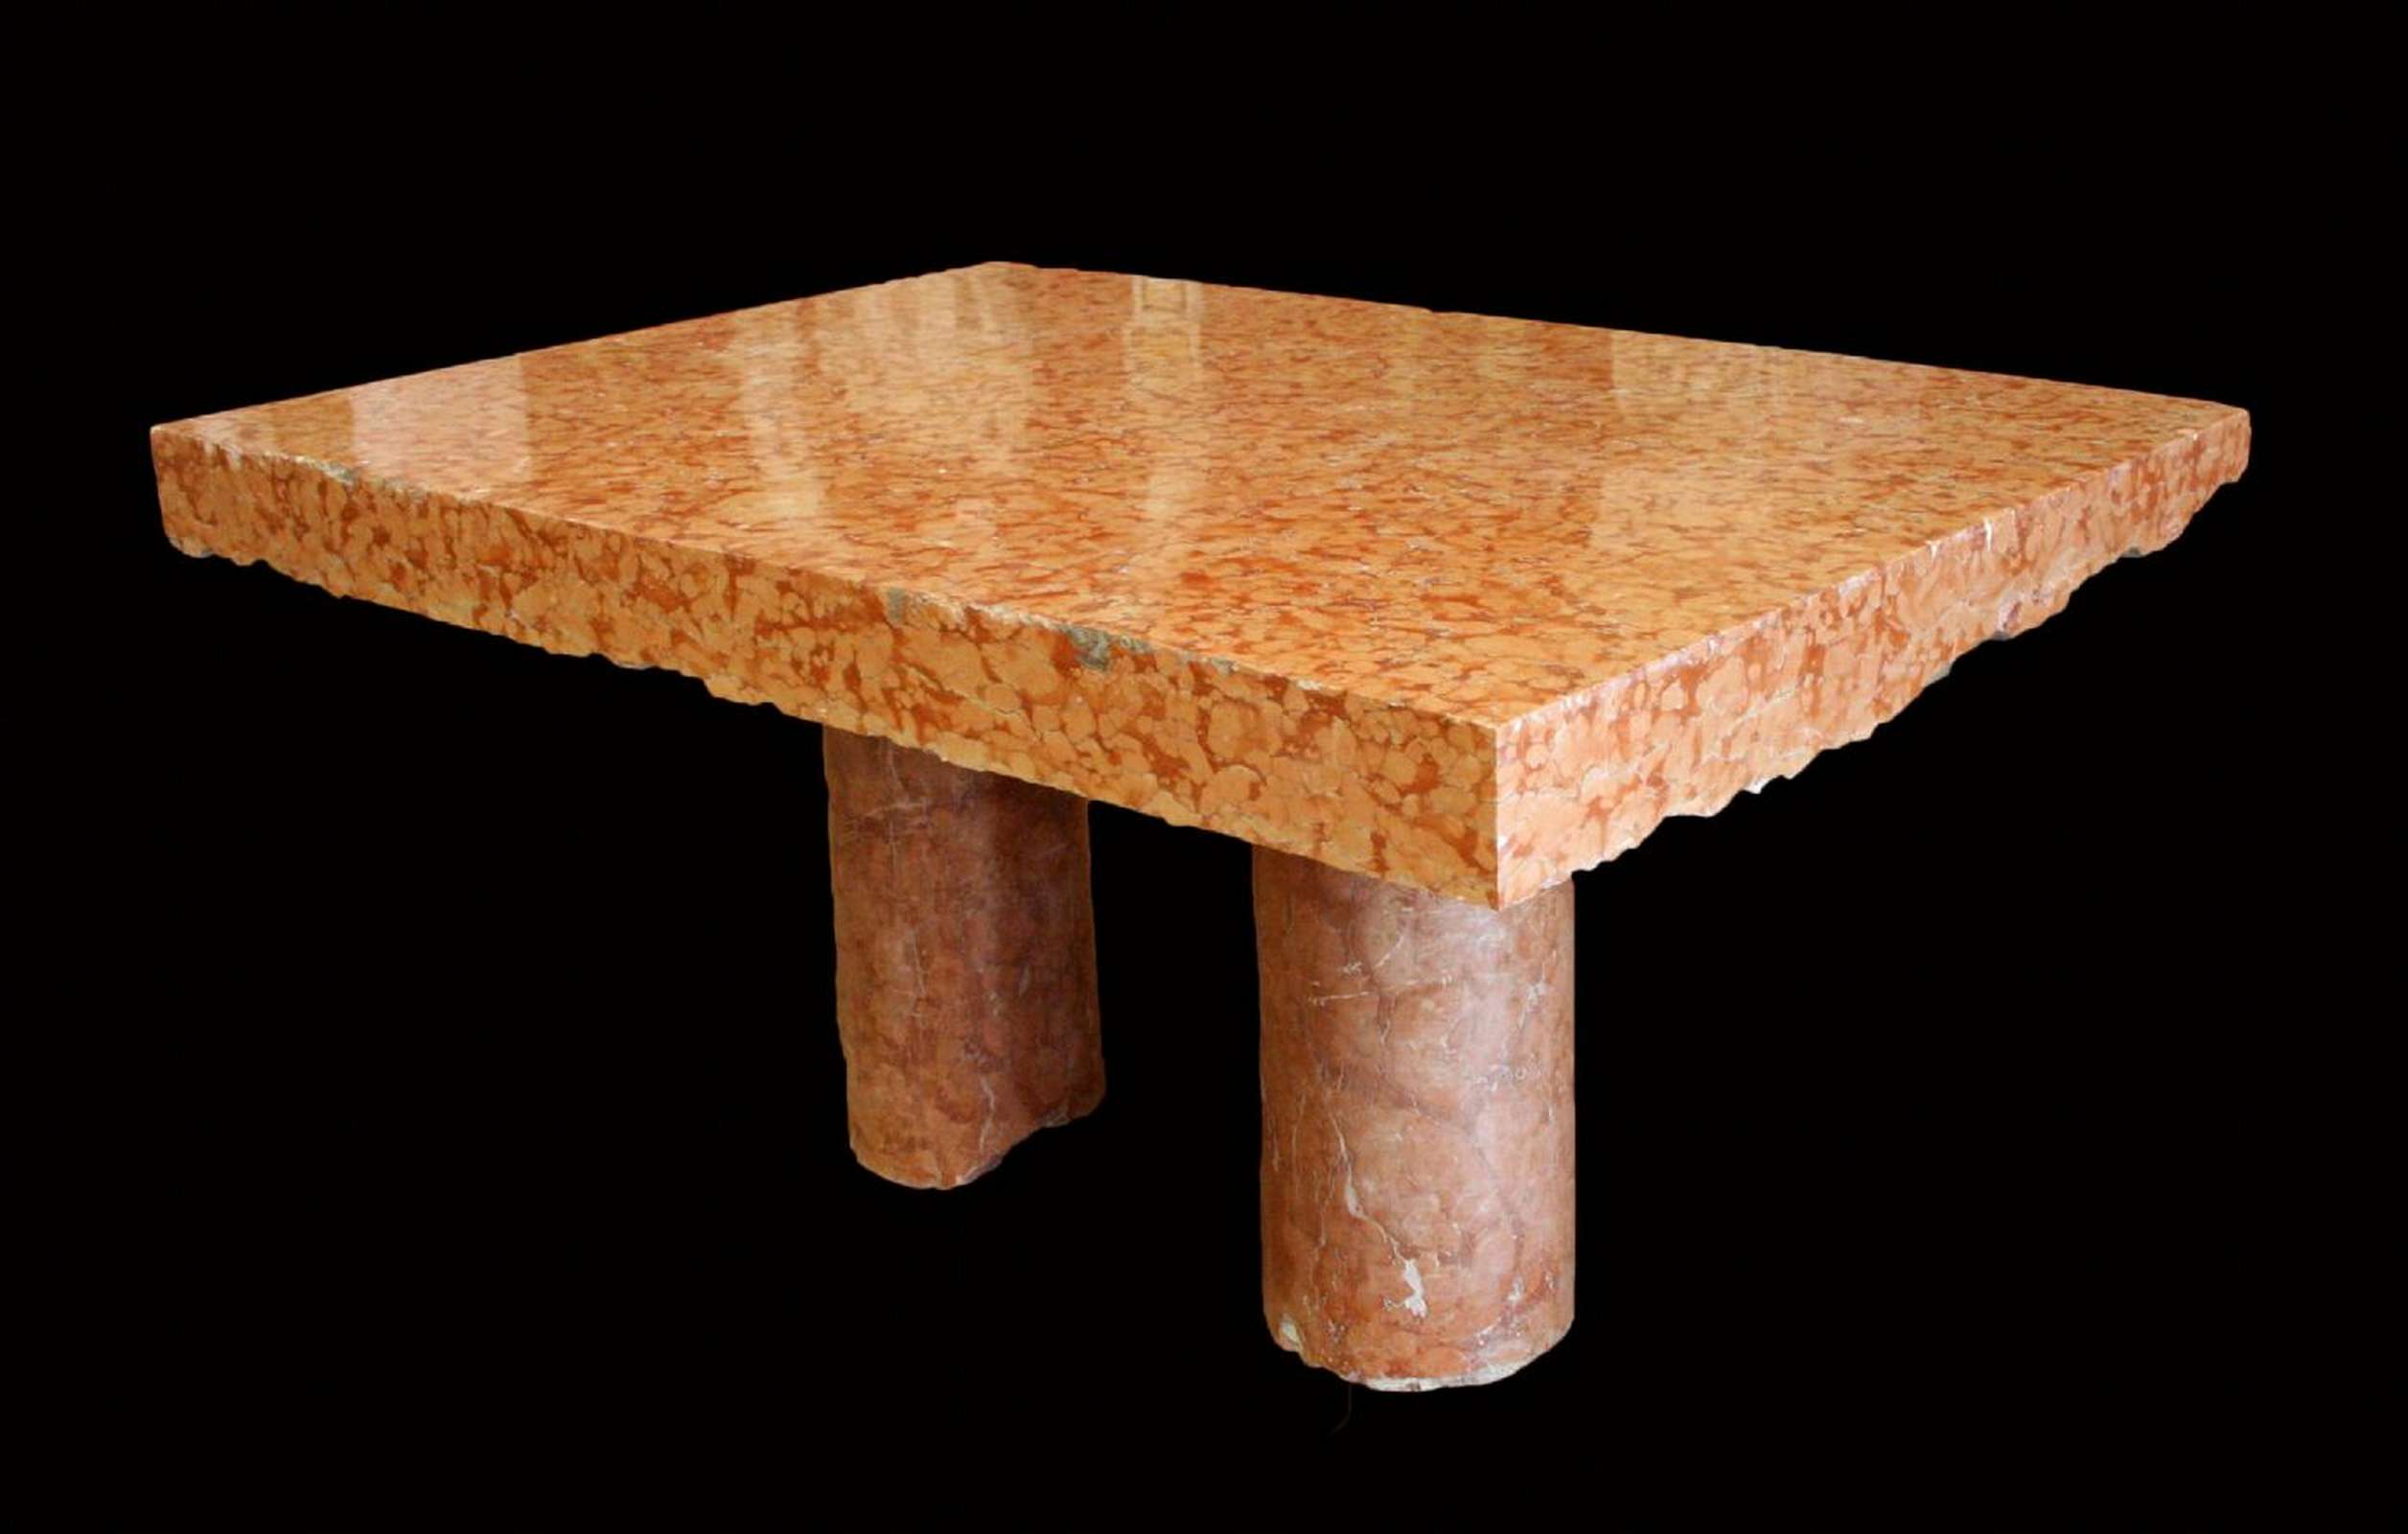 Tavolo in marmo Rosso Verona. Epoca 1800 - Tavoli in vari materiali - Tavoli e complementi - Prodotti - Antichità Fiorillo